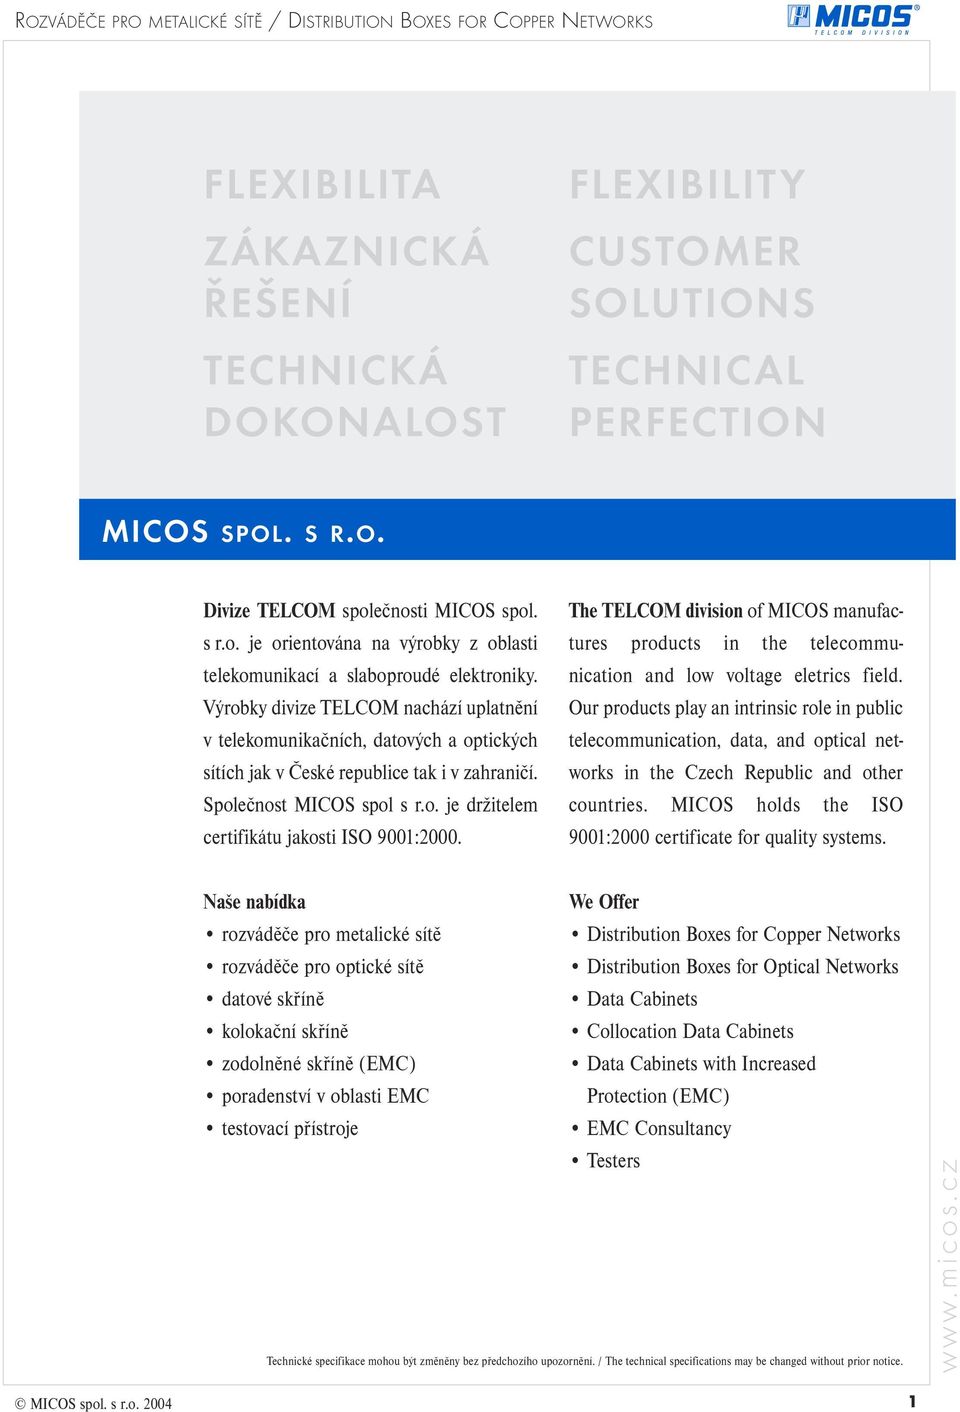 Výrobky divize TELCOM nachází uplatnění v telekomunikačních, datových a optických sítích jak v České republice tak i v zahraničí. Společnost MICOS spol s r.o. je držitelem certifikátu jakosti ISO 9001:2000.